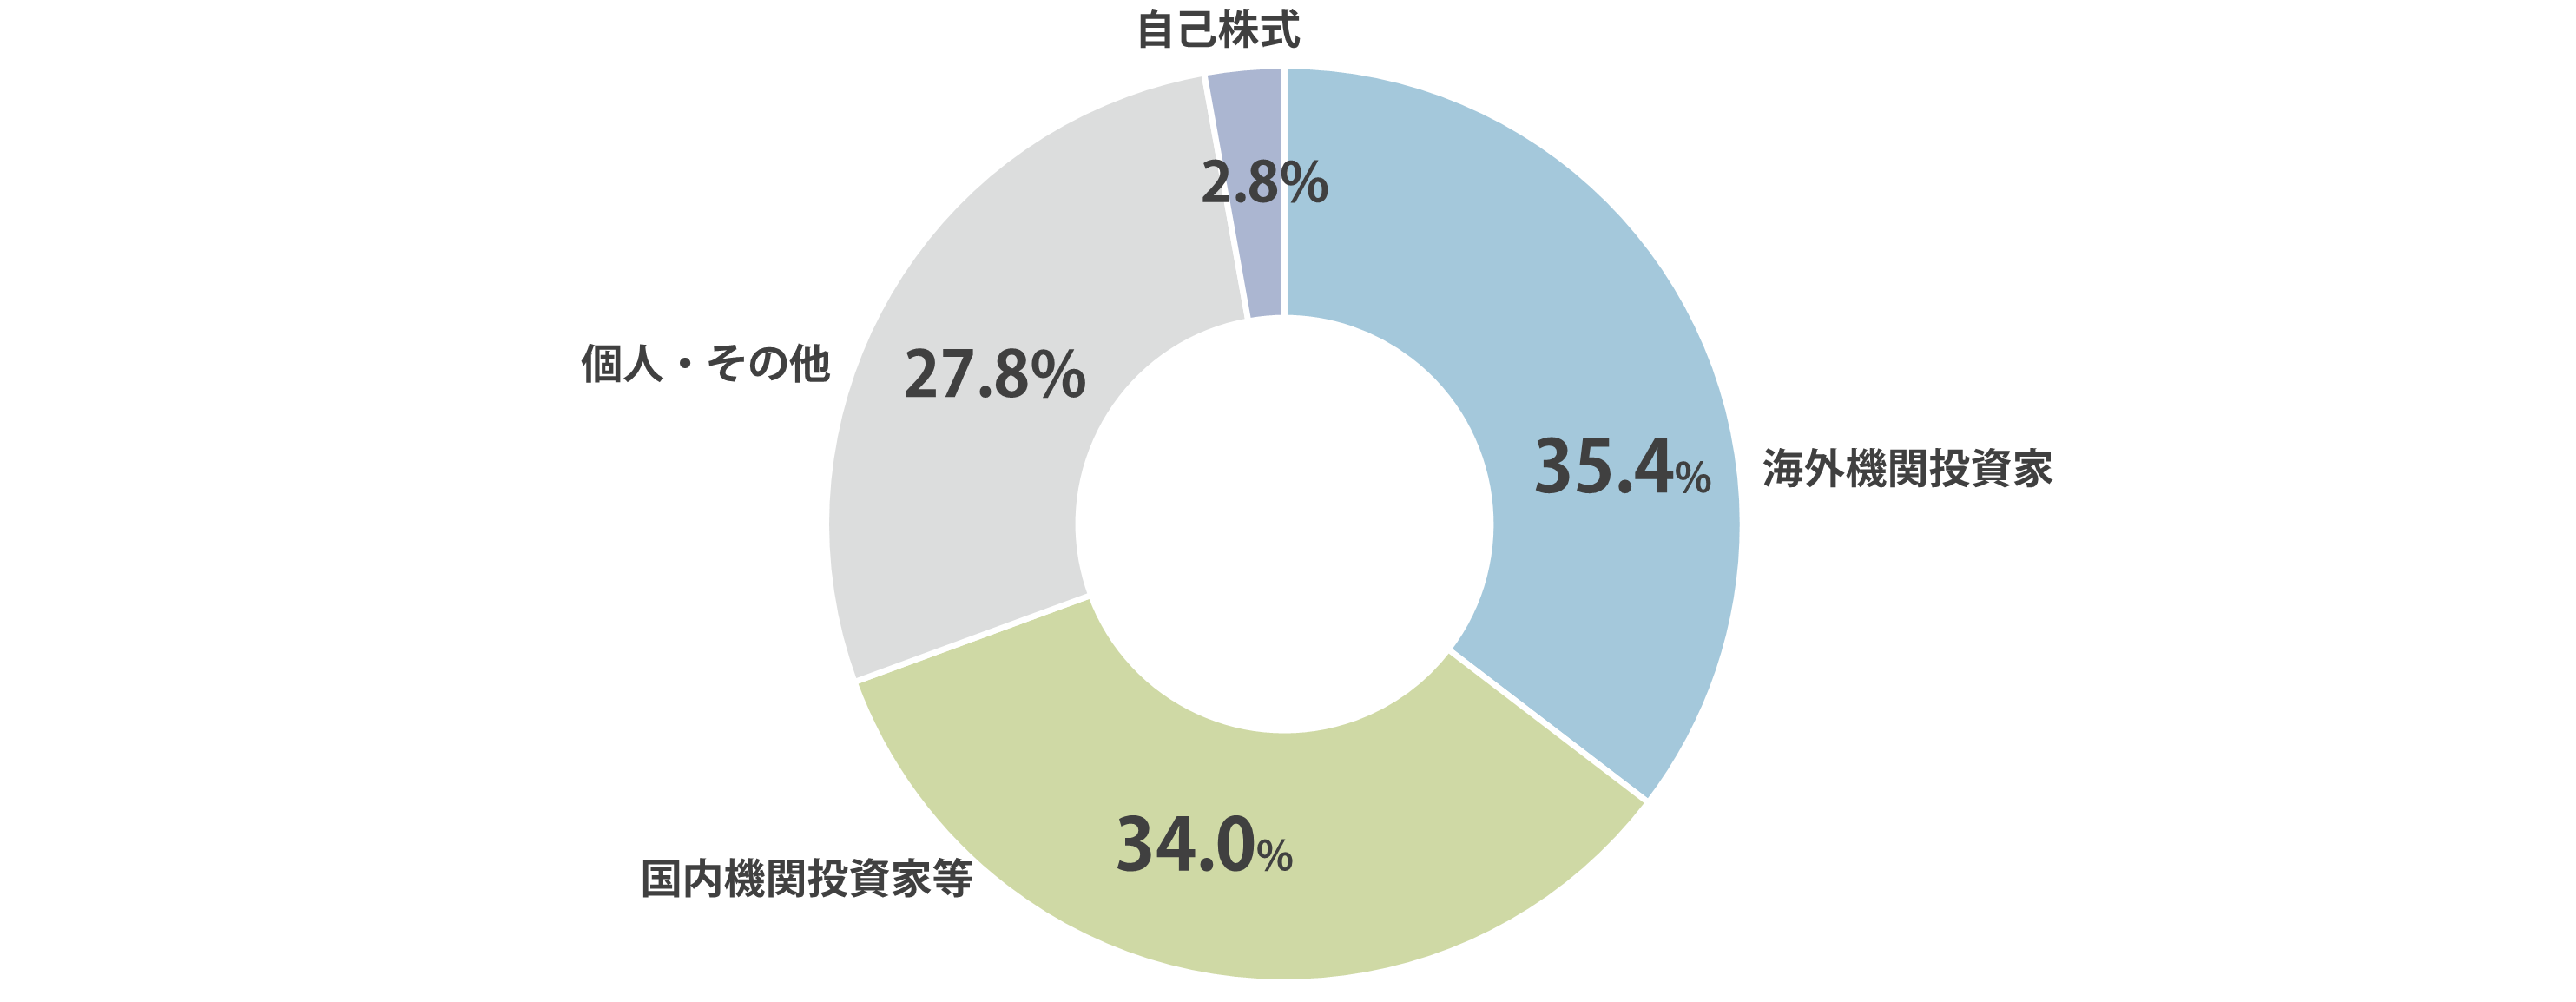 所有者別株式分布状況円グラフ